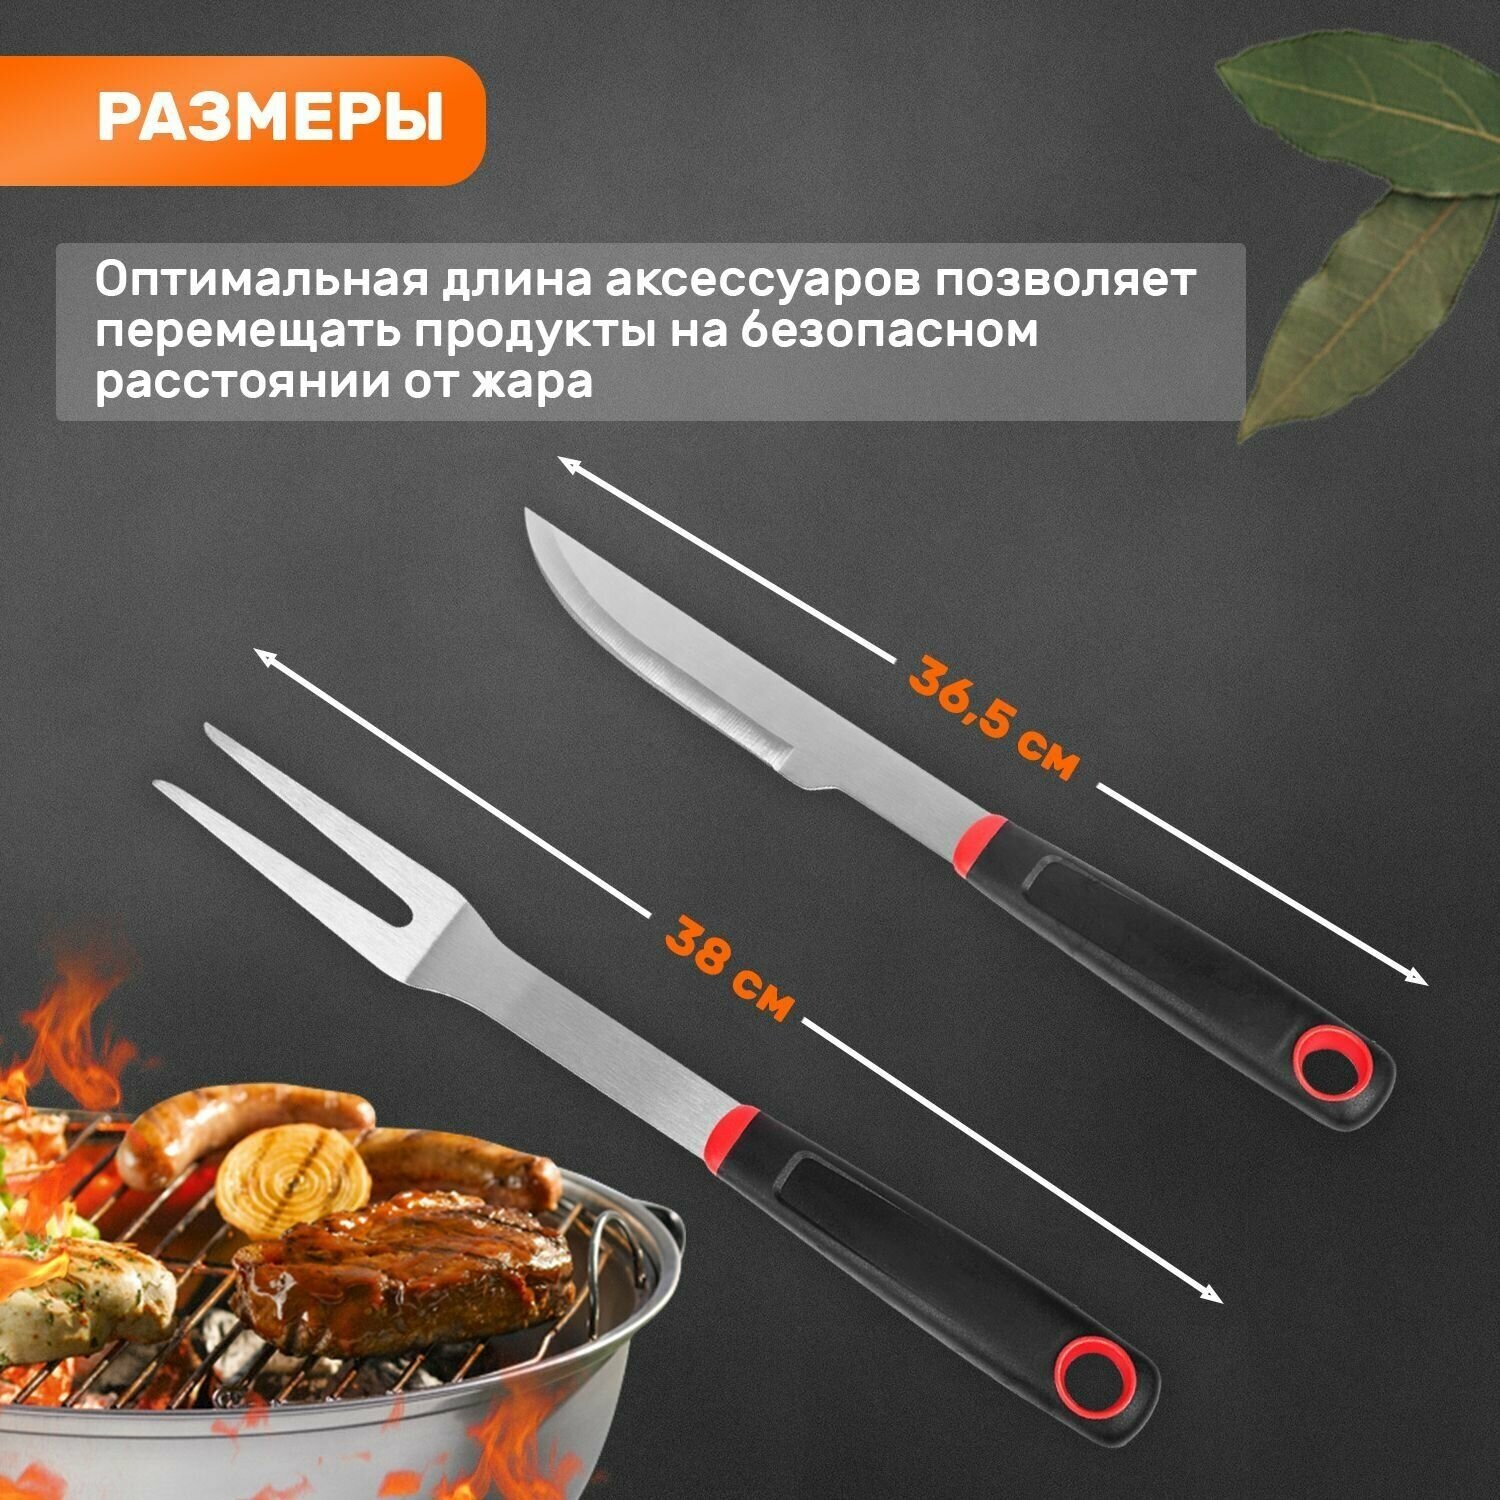 Набор приборов сокол для приготовления стейков на гриле: нож и вилка из нержавеющей стали